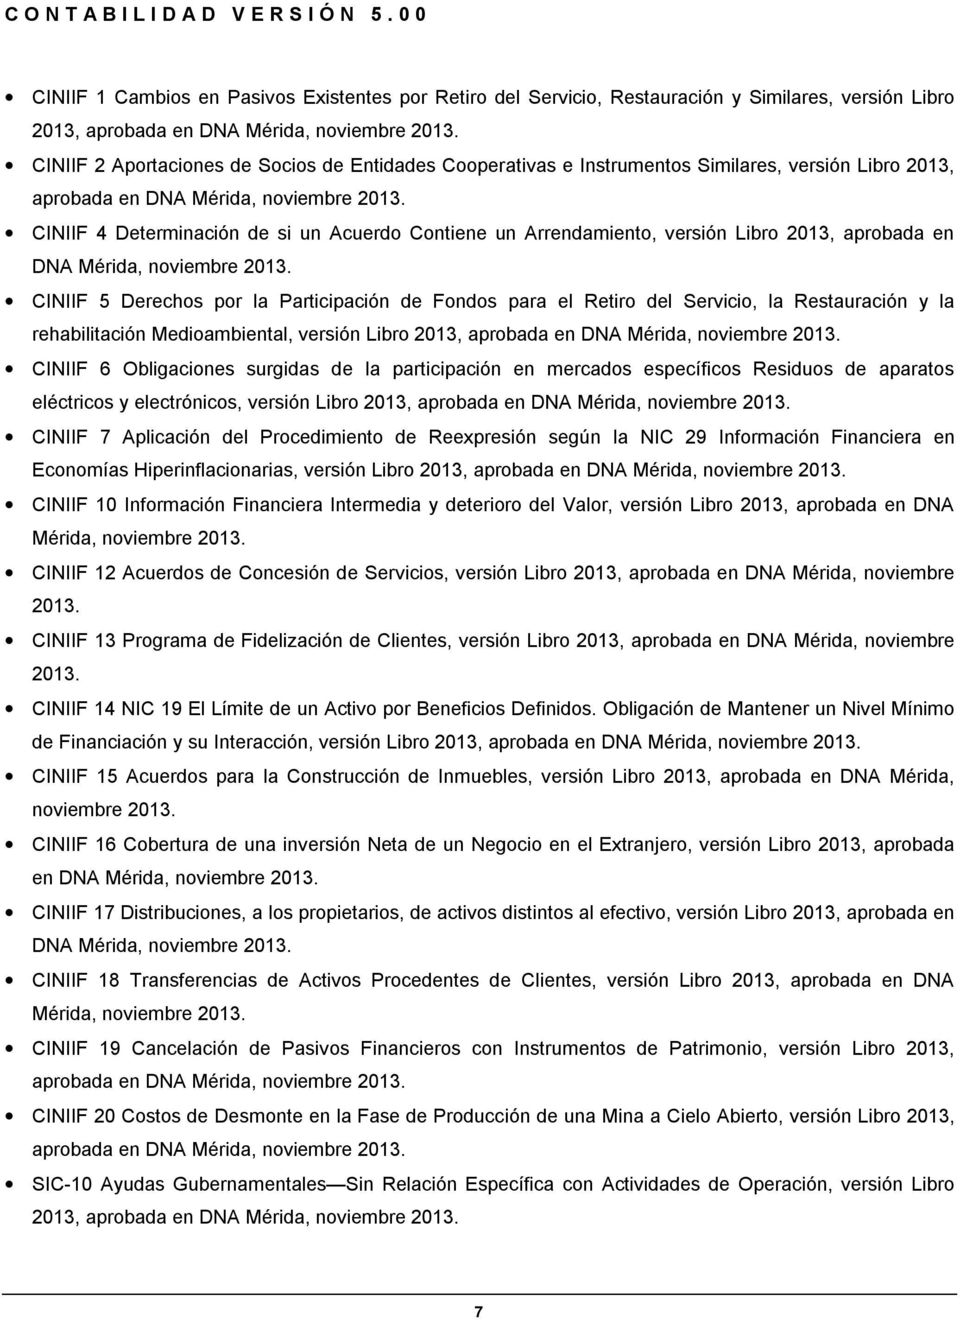 CINIIF 4 Determinación de si un Acuerdo Contiene un Arrendamiento, versión Libro 2013, aprobada en DNA Mérida, noviembre 2013.